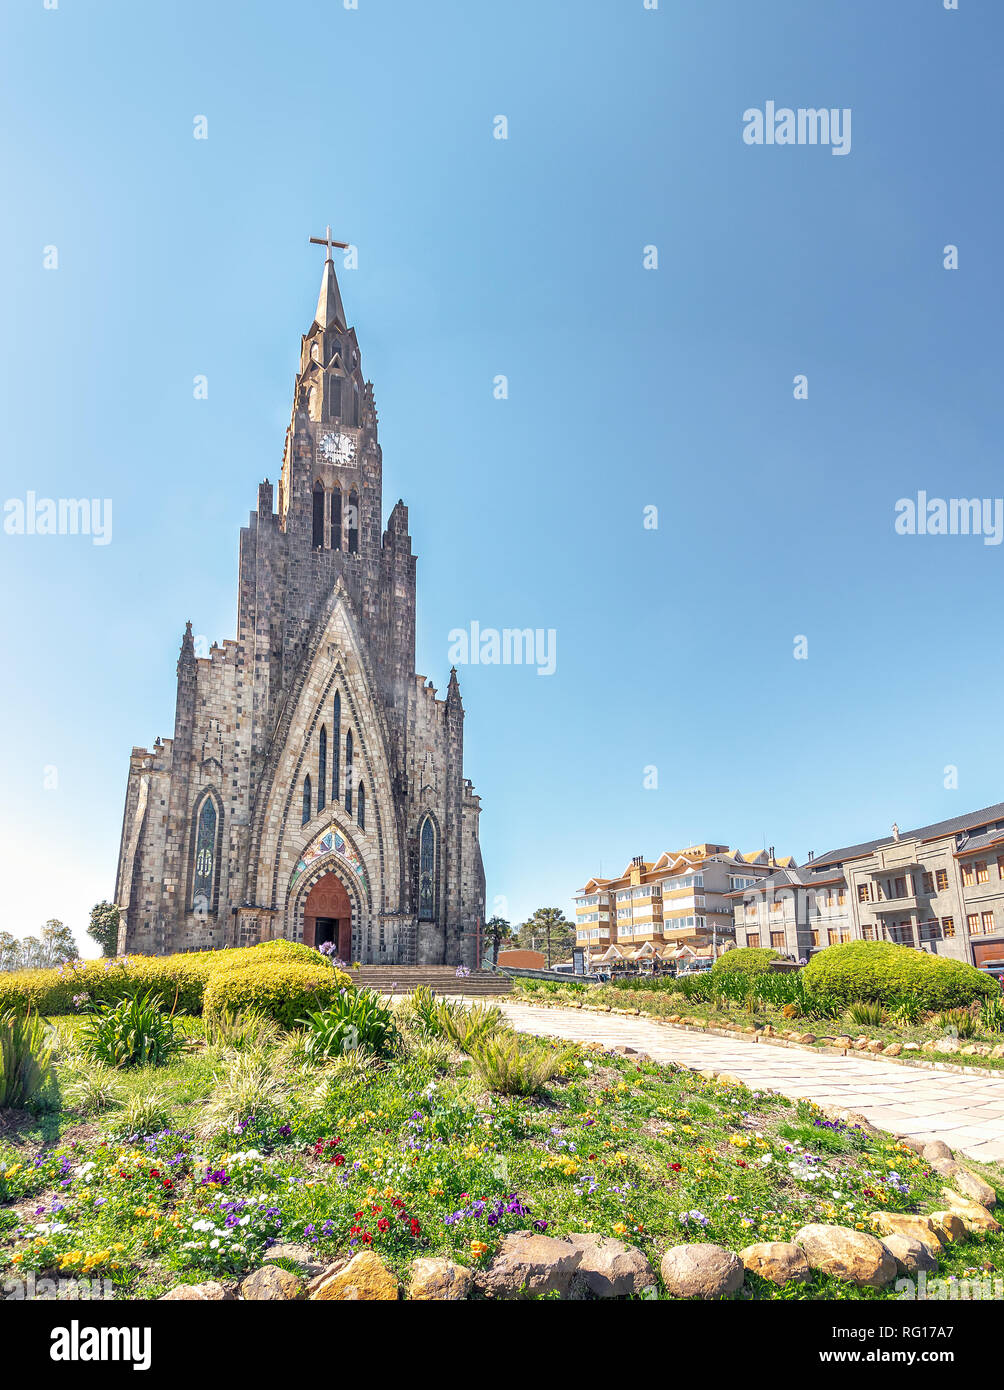 Canela cathédrale de pierre (Notre Dame de Lourdes) - Canela, Rio Grande do Sul, Brésil Banque D'Images